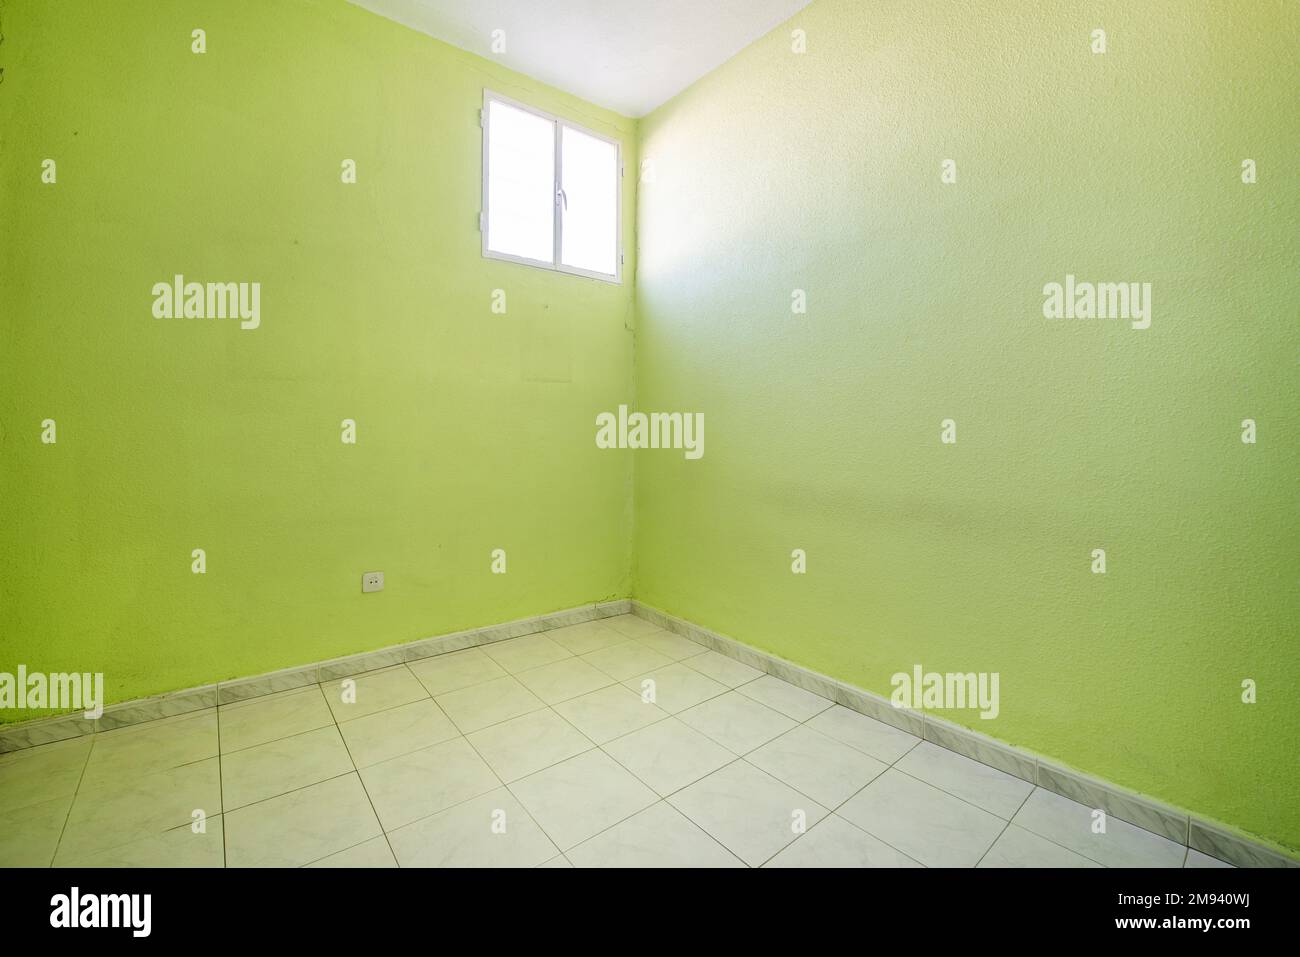 Leerer Raum mit pistaziengrün bemalten Wänden mit weißem Fliesenboden und einem einzigen Aluminiumfenster in einer Ecke Stockfoto